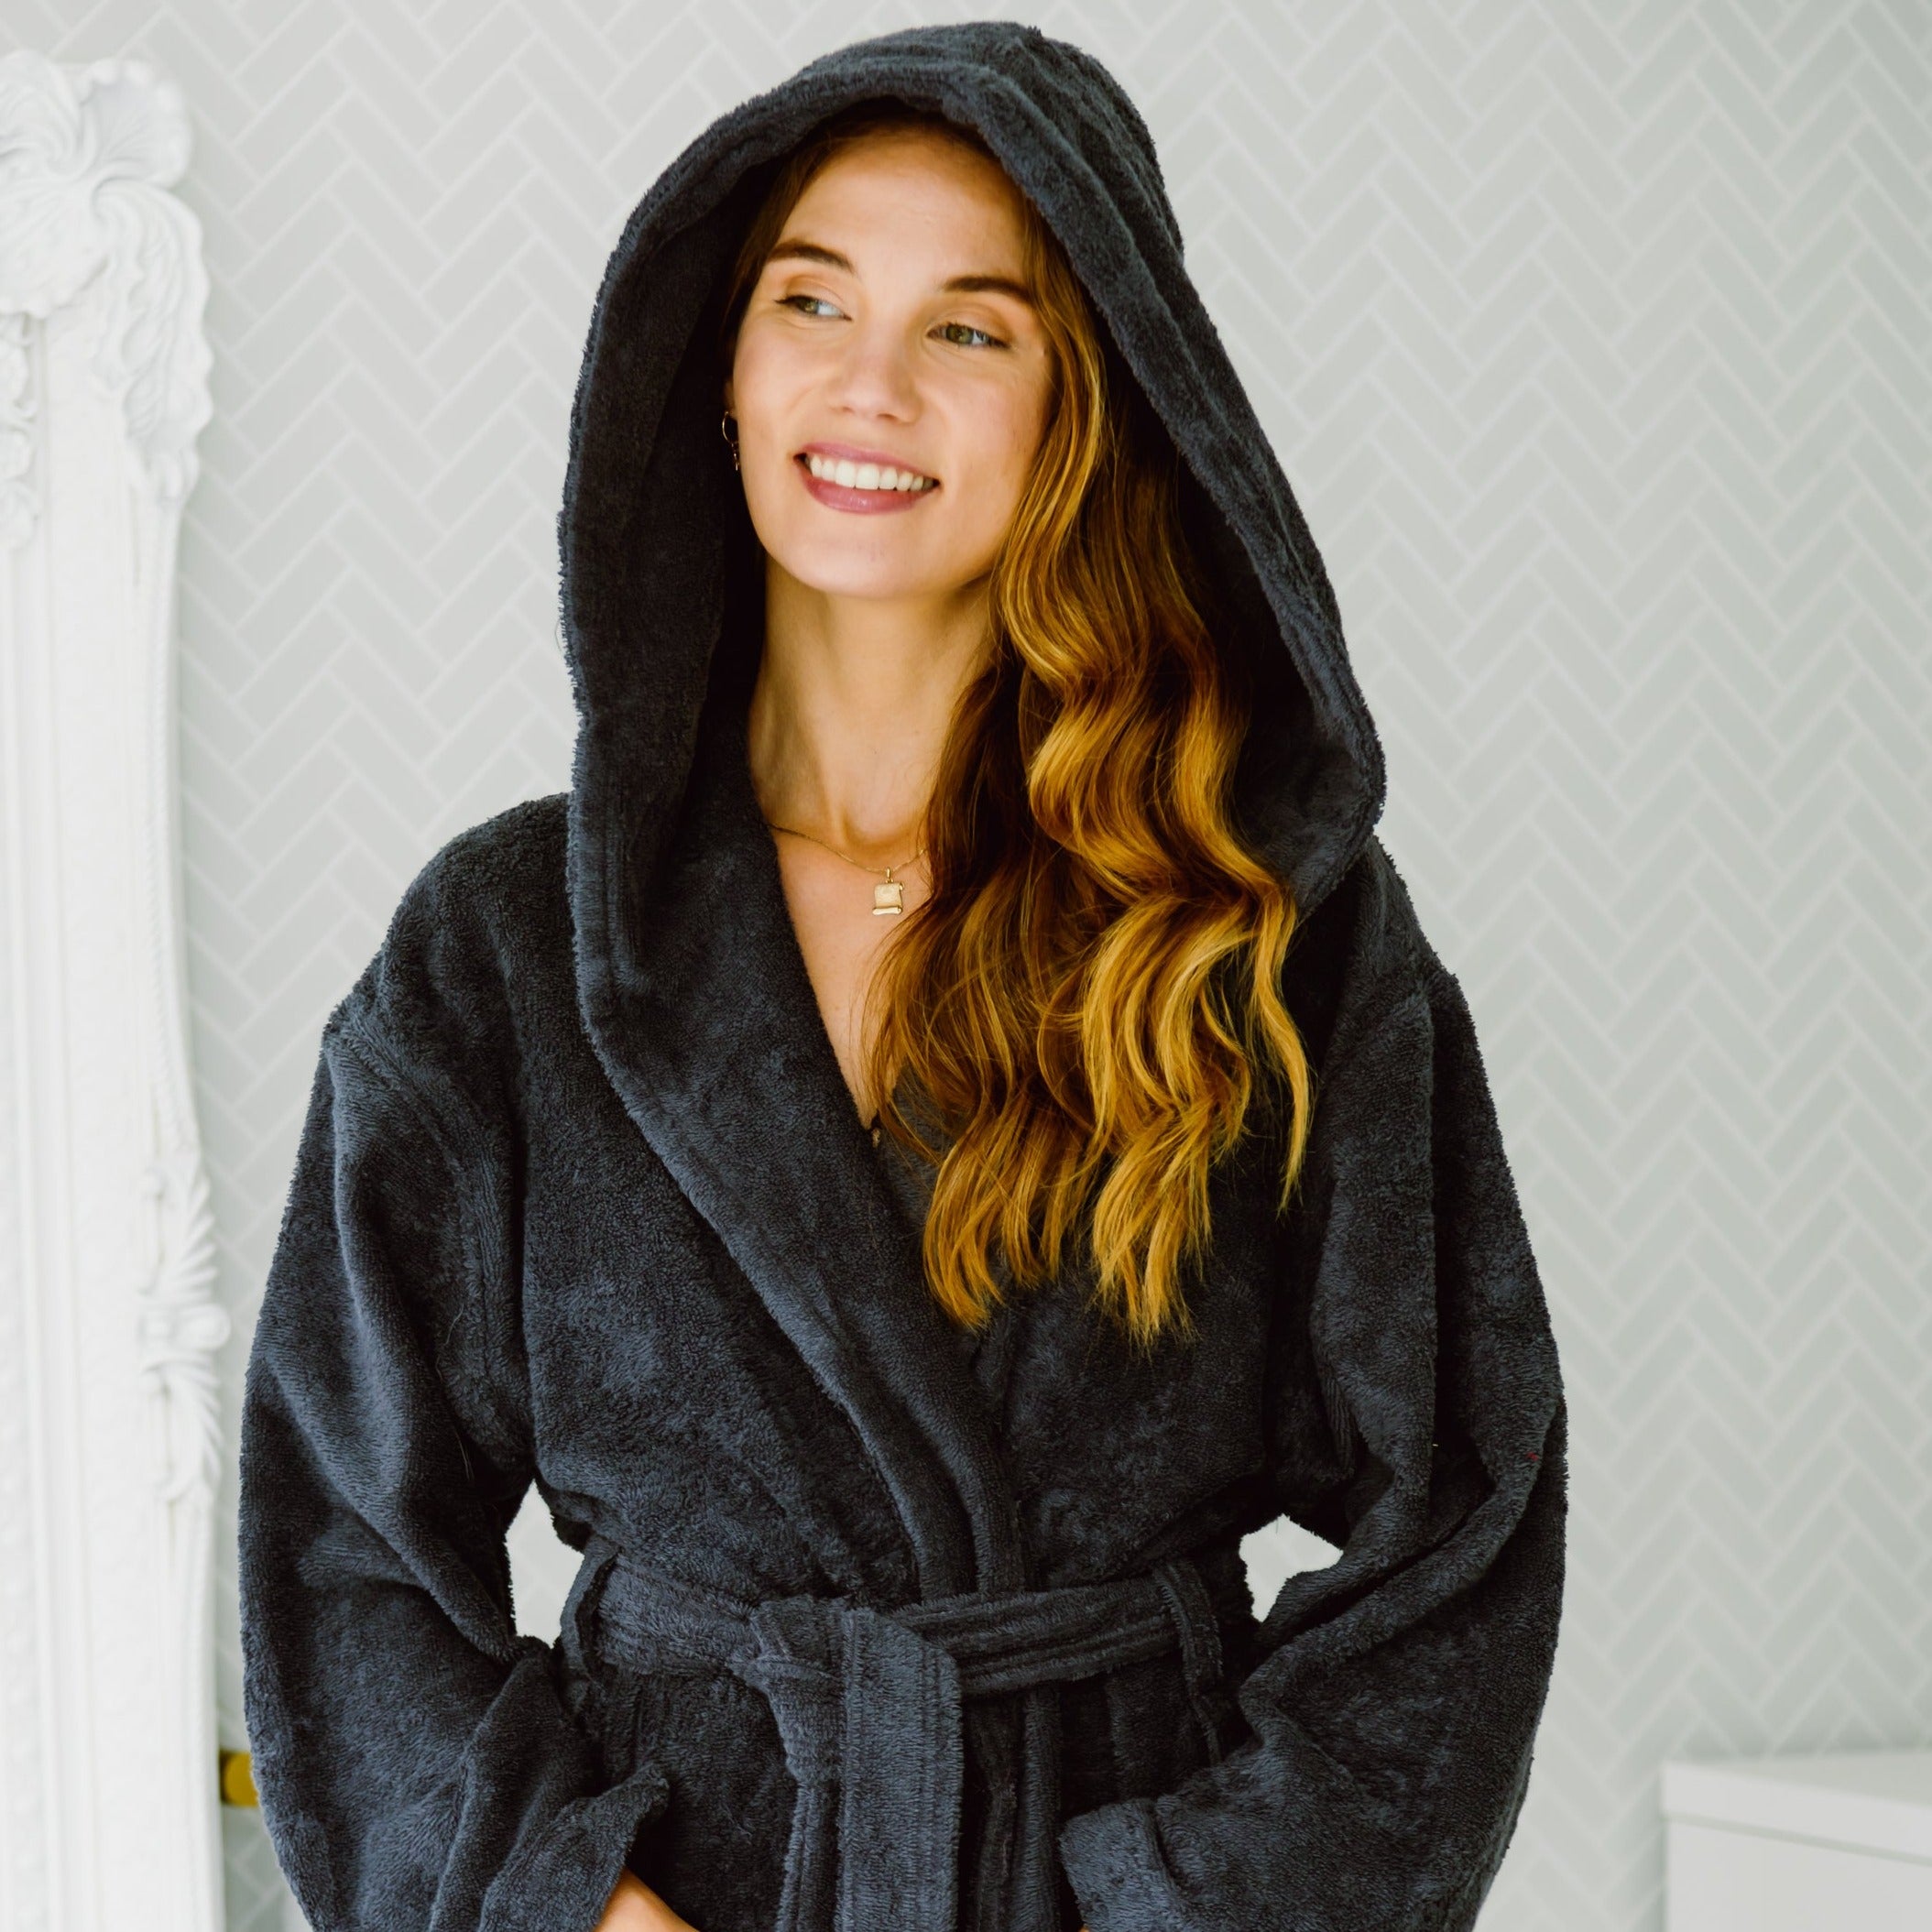 Buy Da Intimo Black Lace Robe for Women's Online @ Tata CLiQ